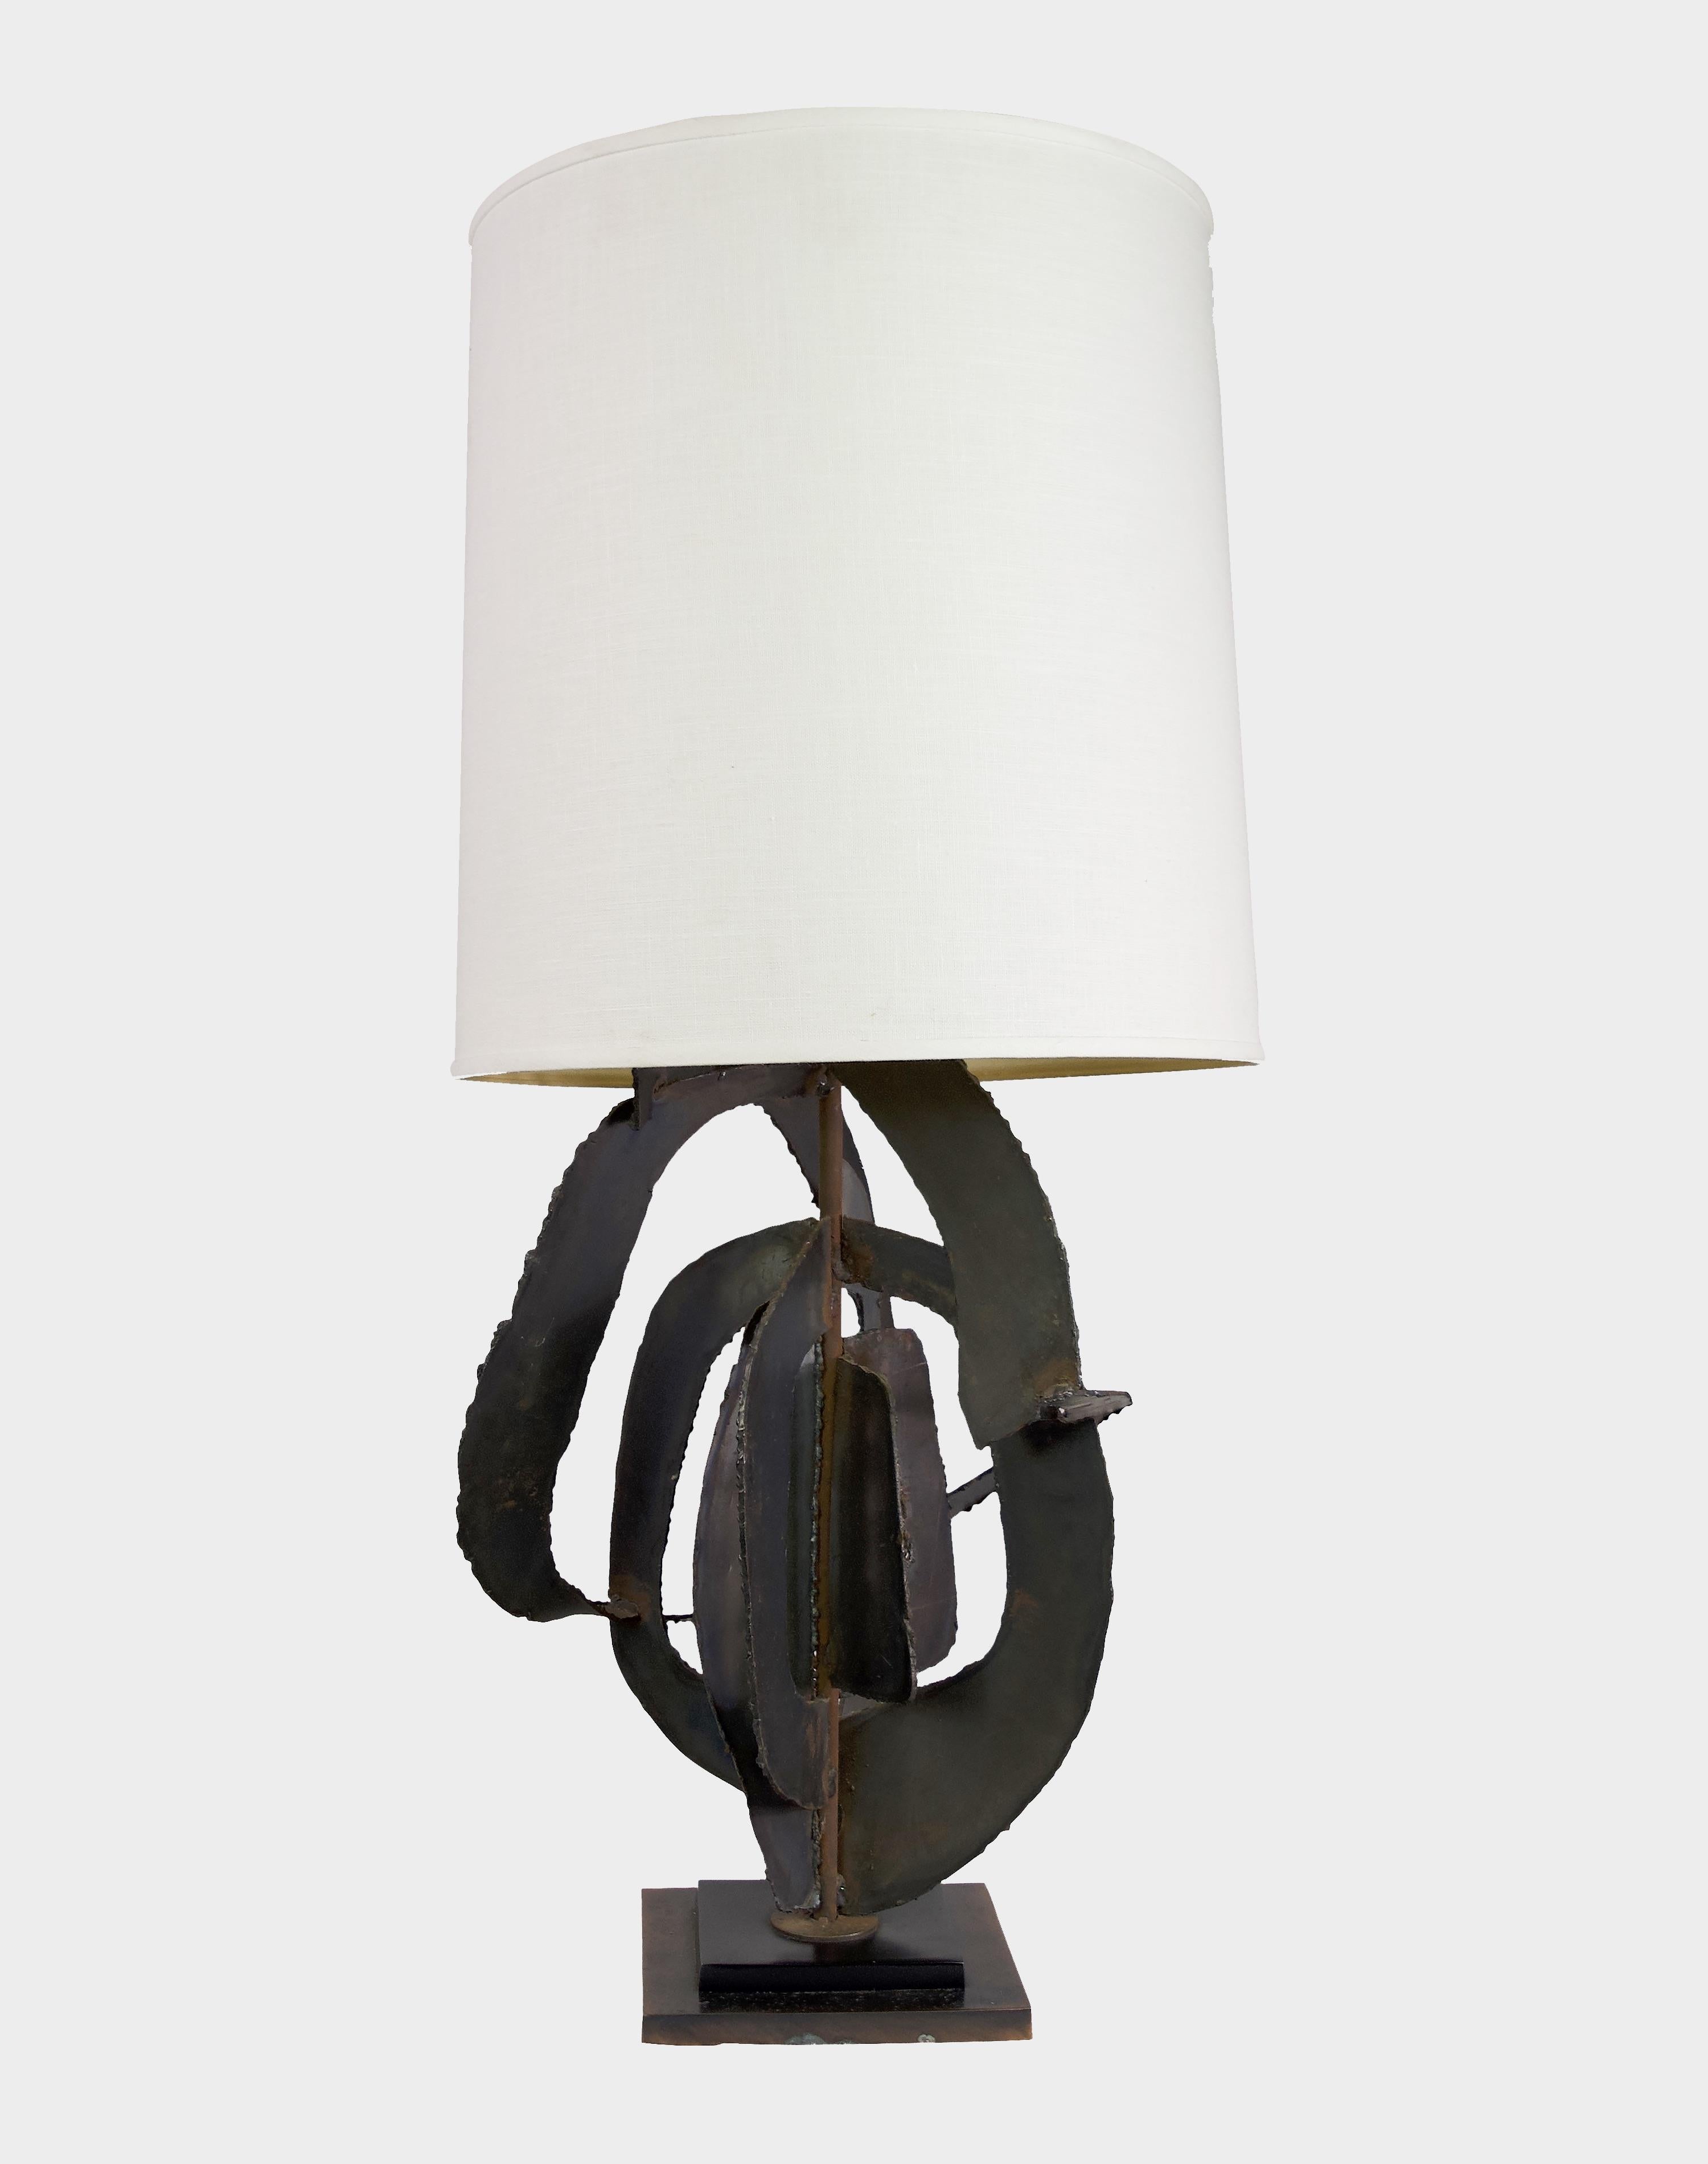 Die 1970er Jahre brachten eine Reihe von ikonischen Entwürfen hervor, unter denen die bemerkenswerte geschliffene Fackellampe von Harry Balmer für Laurel Lighting hervorsticht. Dieses Meisterwerk des Brutalismus strahlt Kühnheit aus und hinterlässt